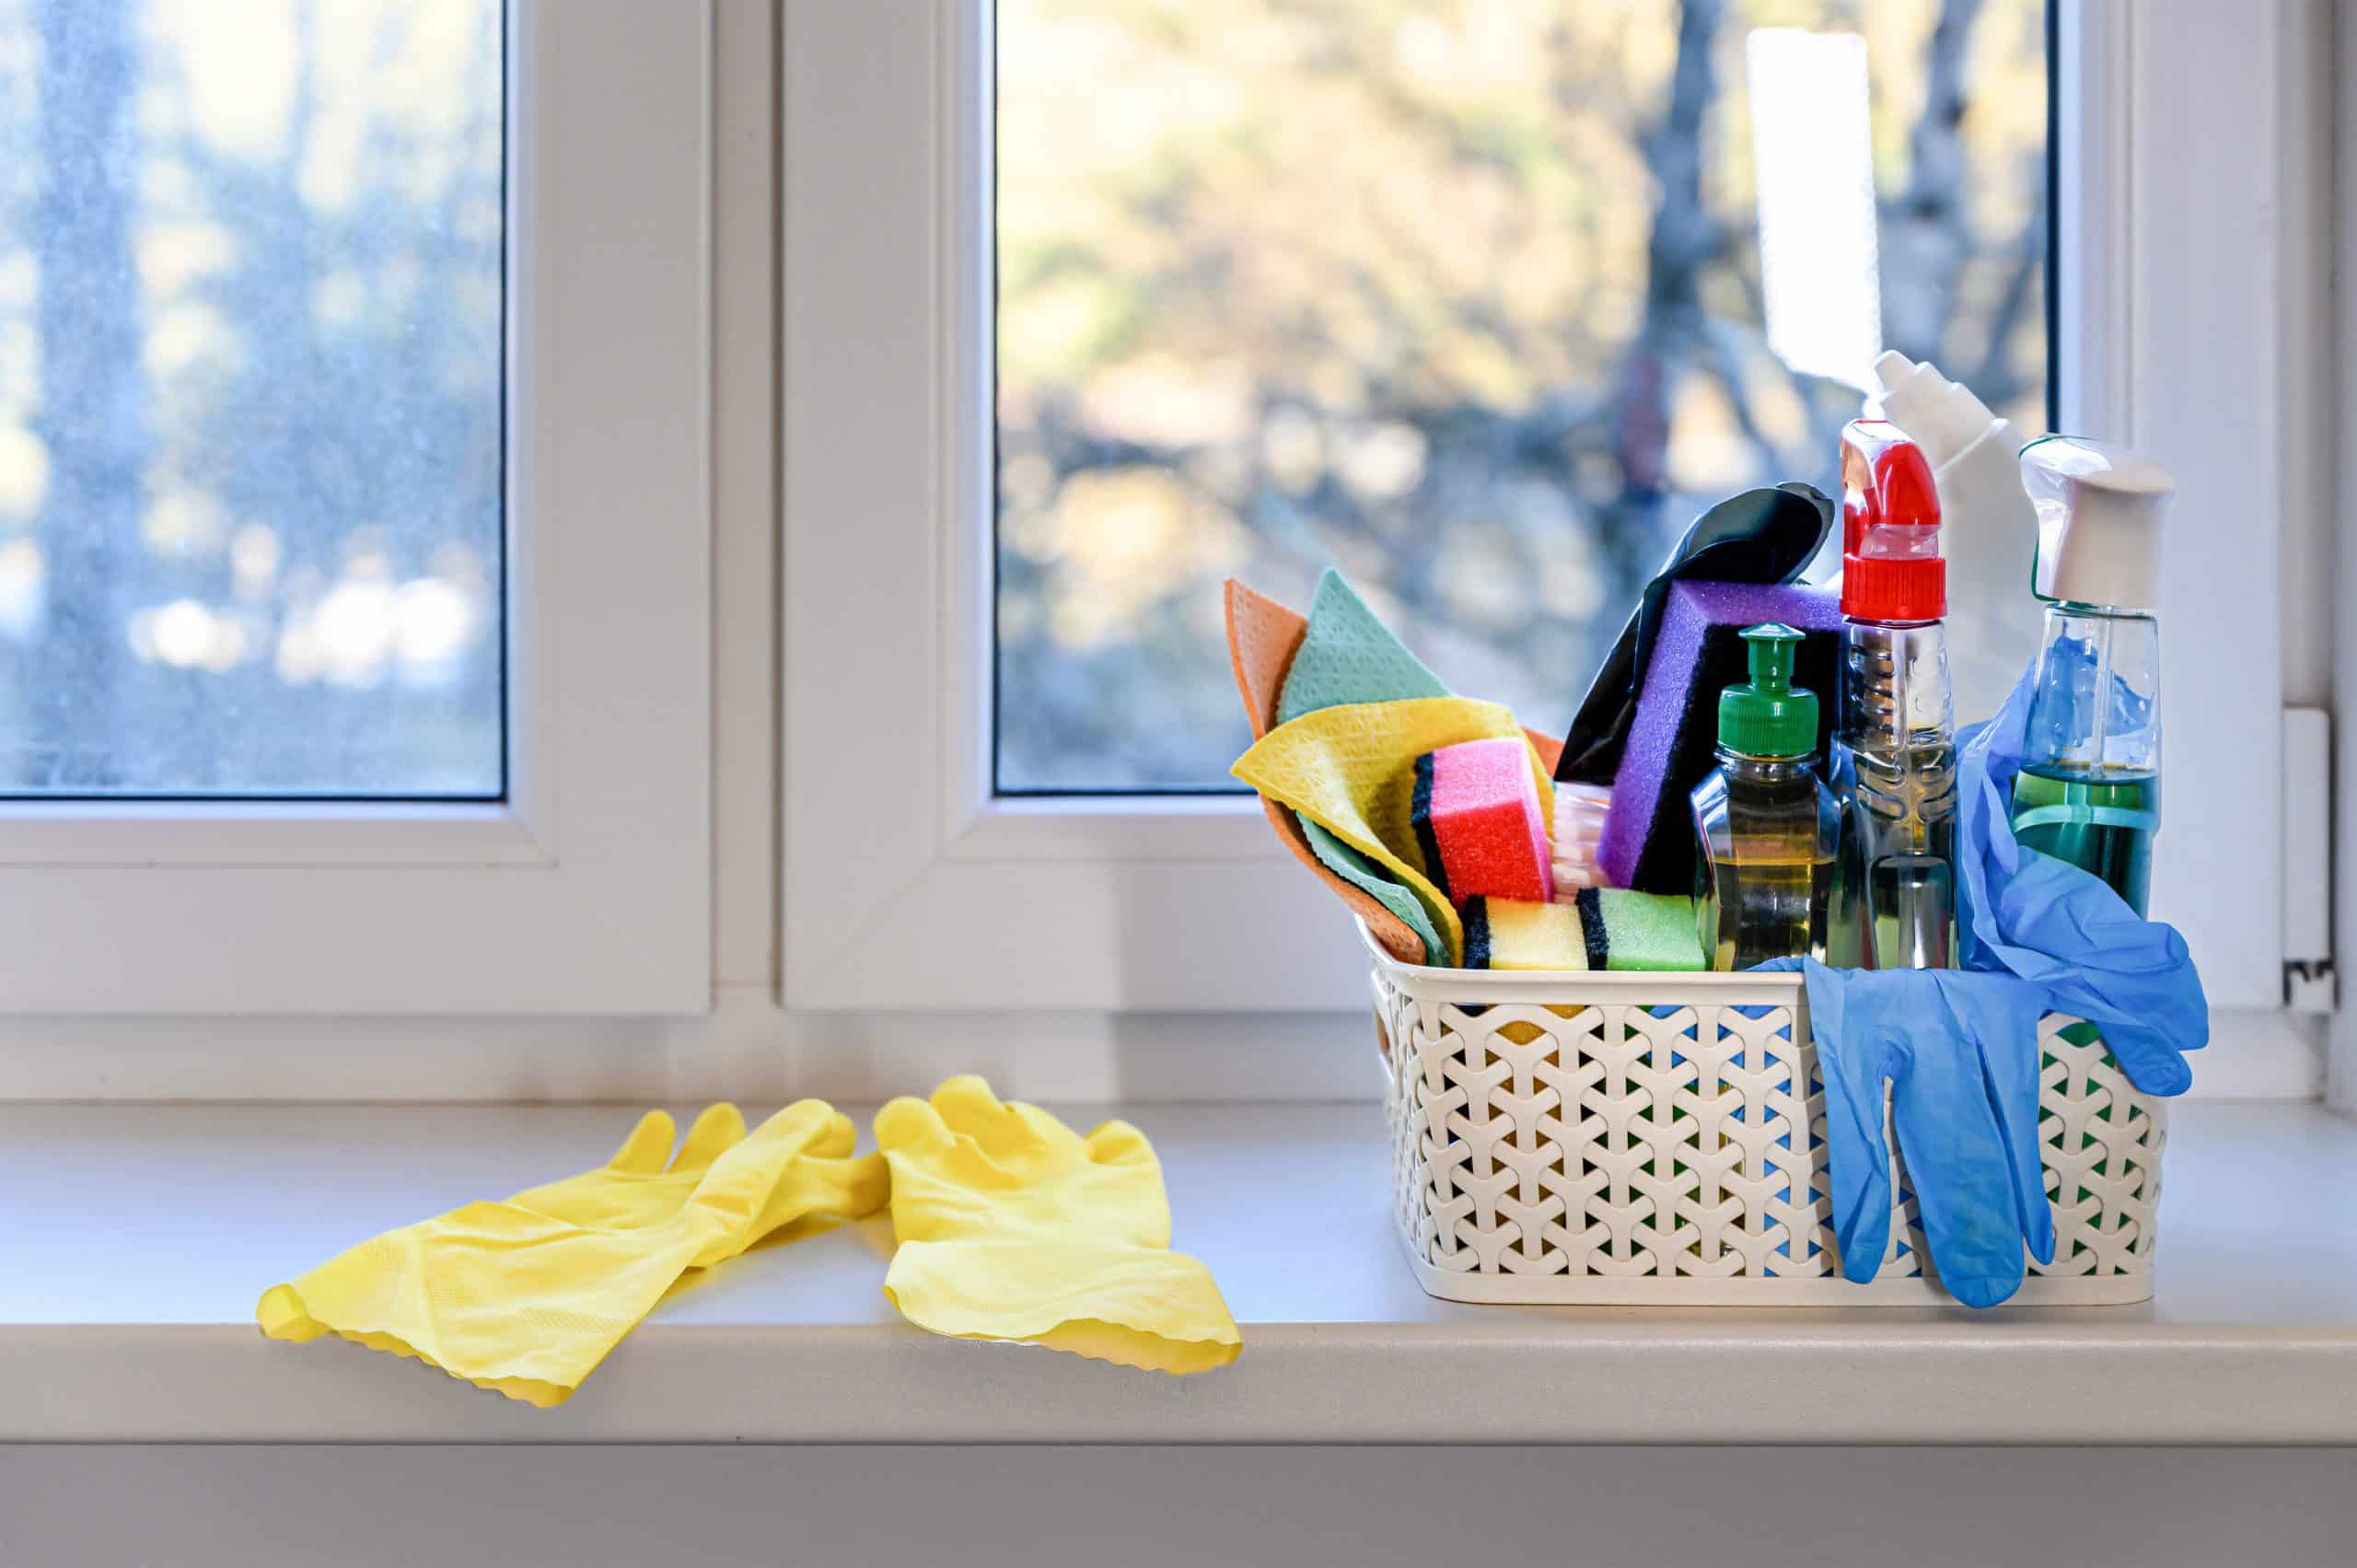 Koszyk ze ściereczkami, gąbkami oraz środkami do mycia okien, przeszkleń i parapetów stojący na okiennym parapecie; w tle brudne okno